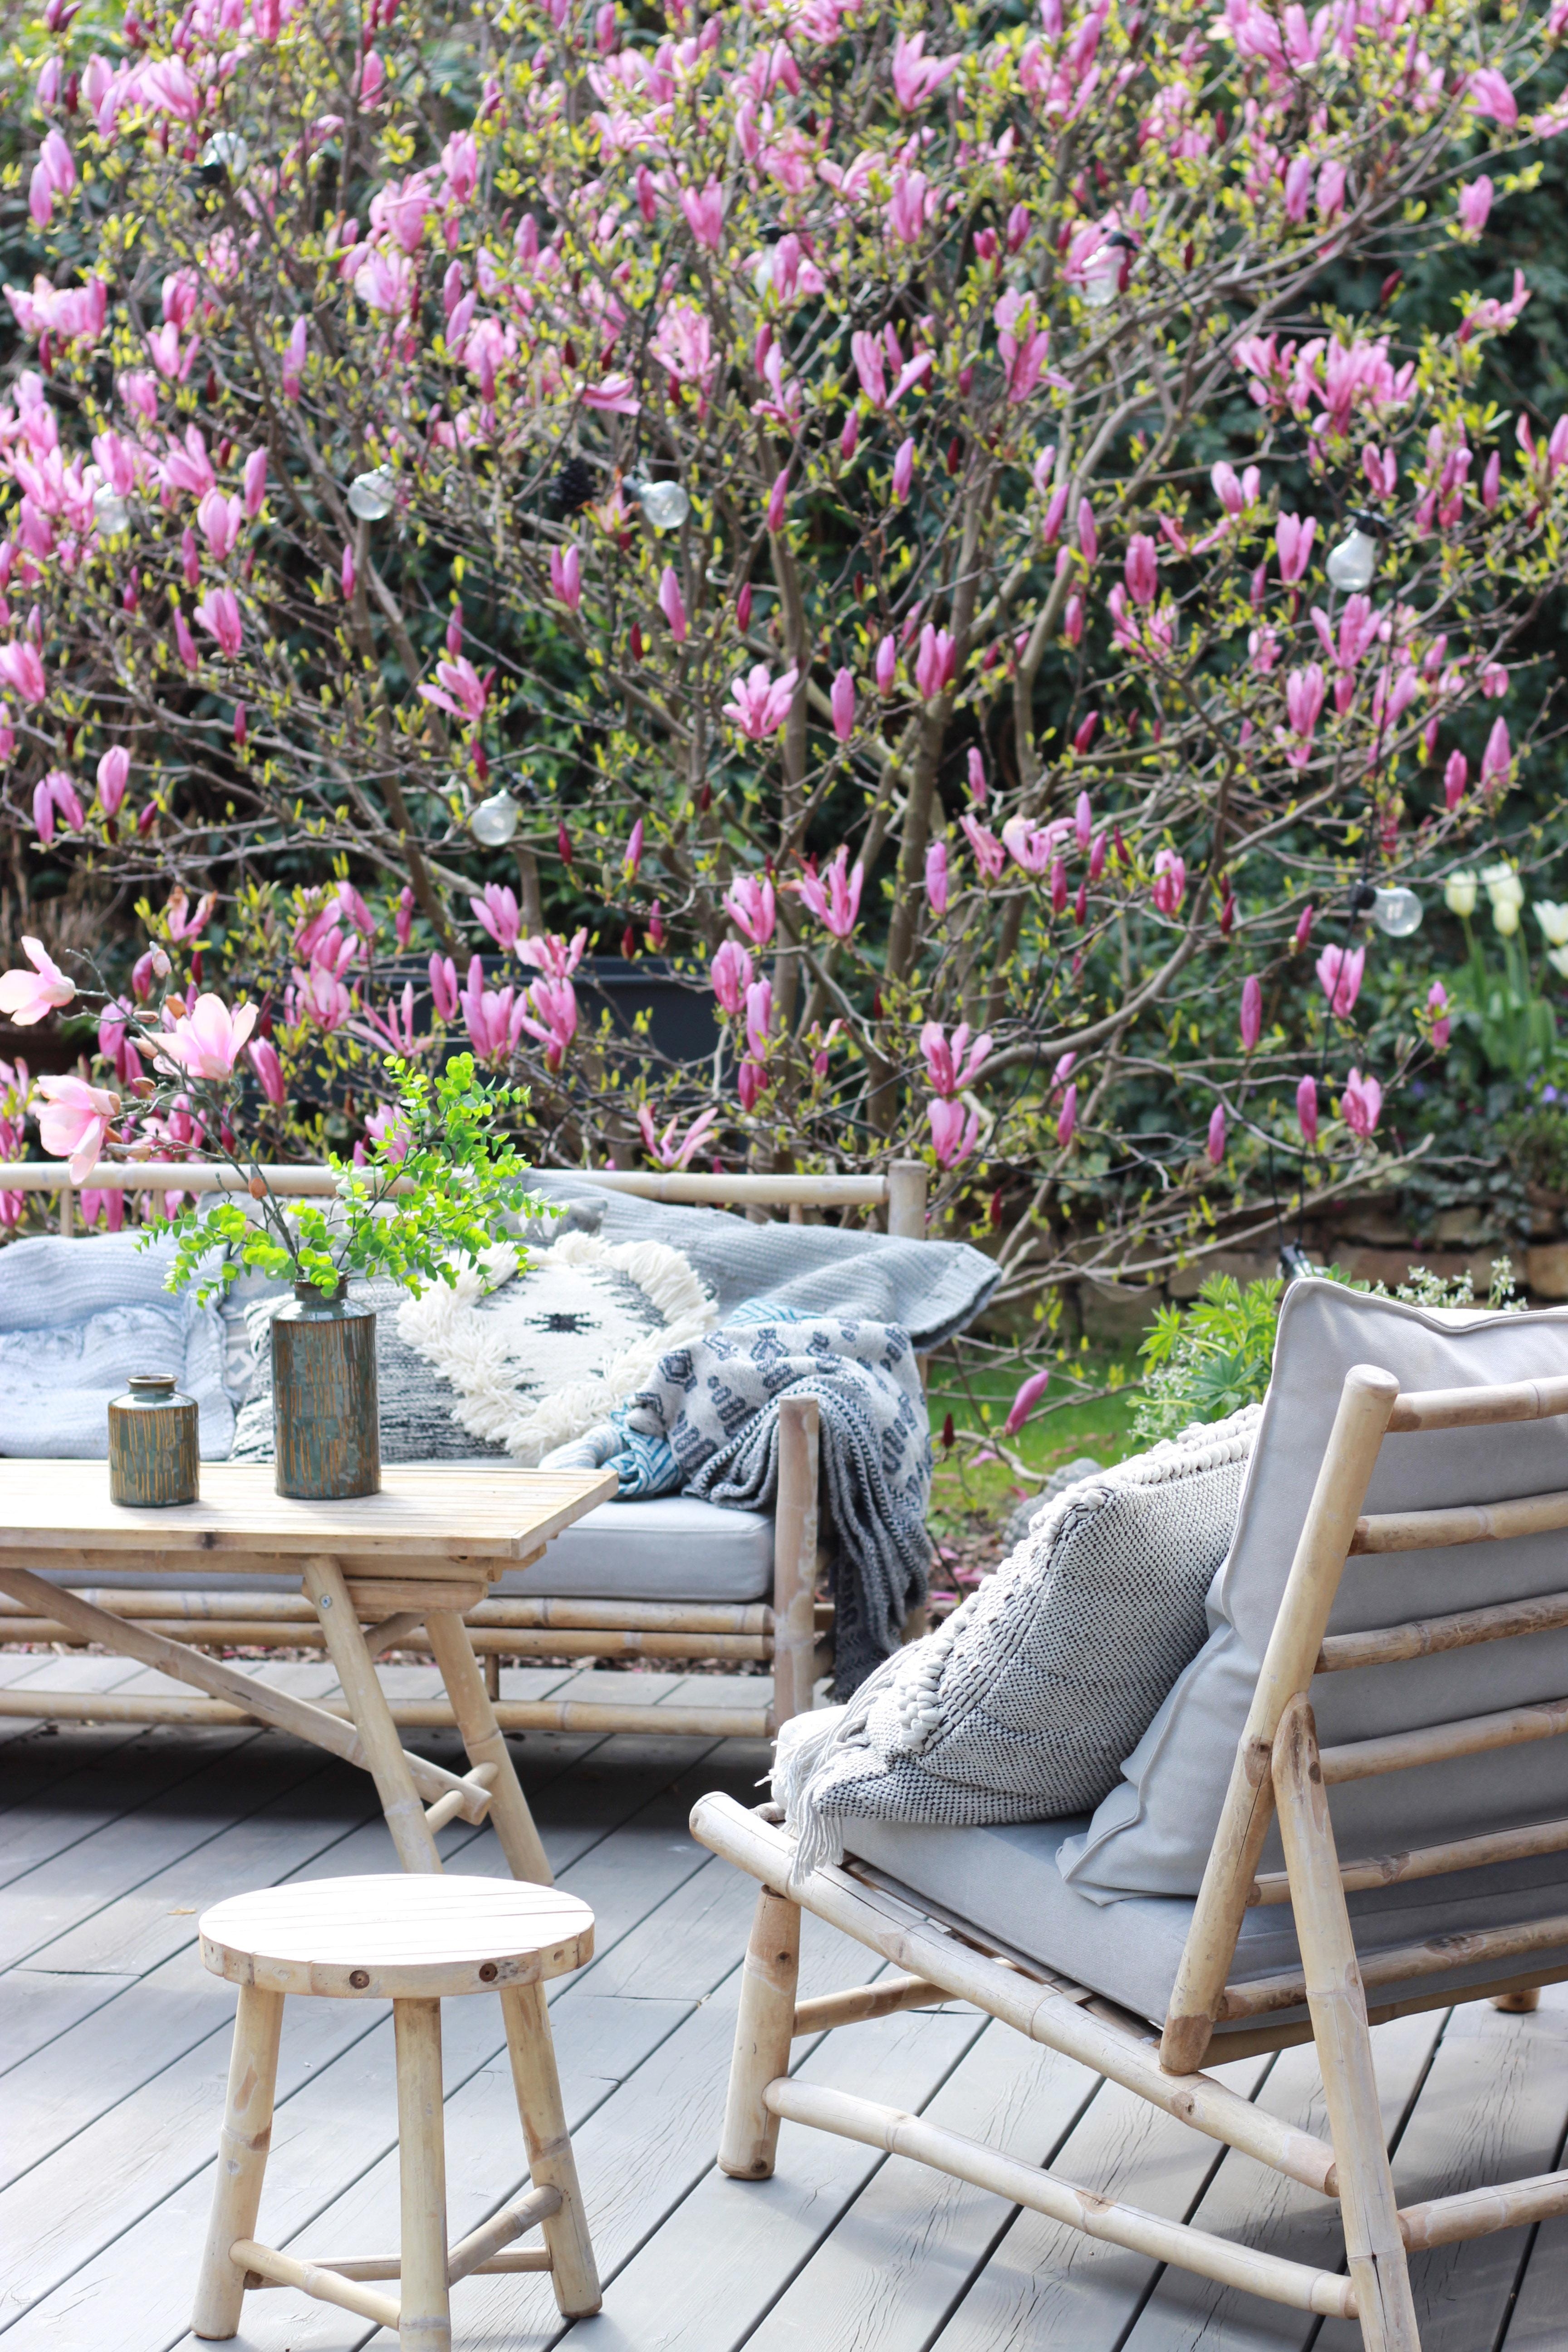 Spring 🌺🖤 #magnolie #terrasse #garten #frühling #spring #blüte #gartenzeit #outdoorliving #cozytime #gartengestaltung